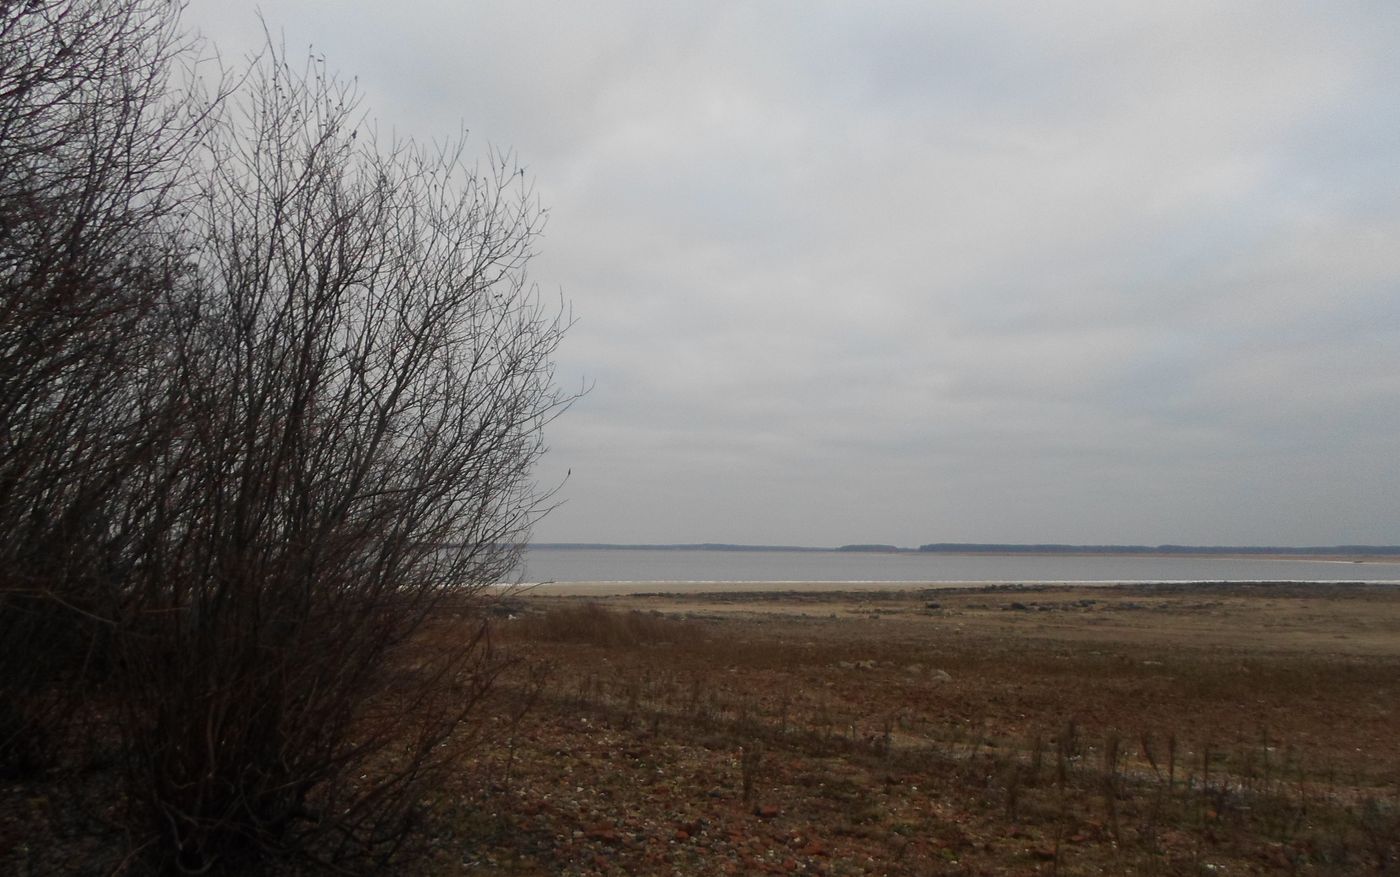 Остров Егорушкин и берег рядом, image of landscape/habitat.